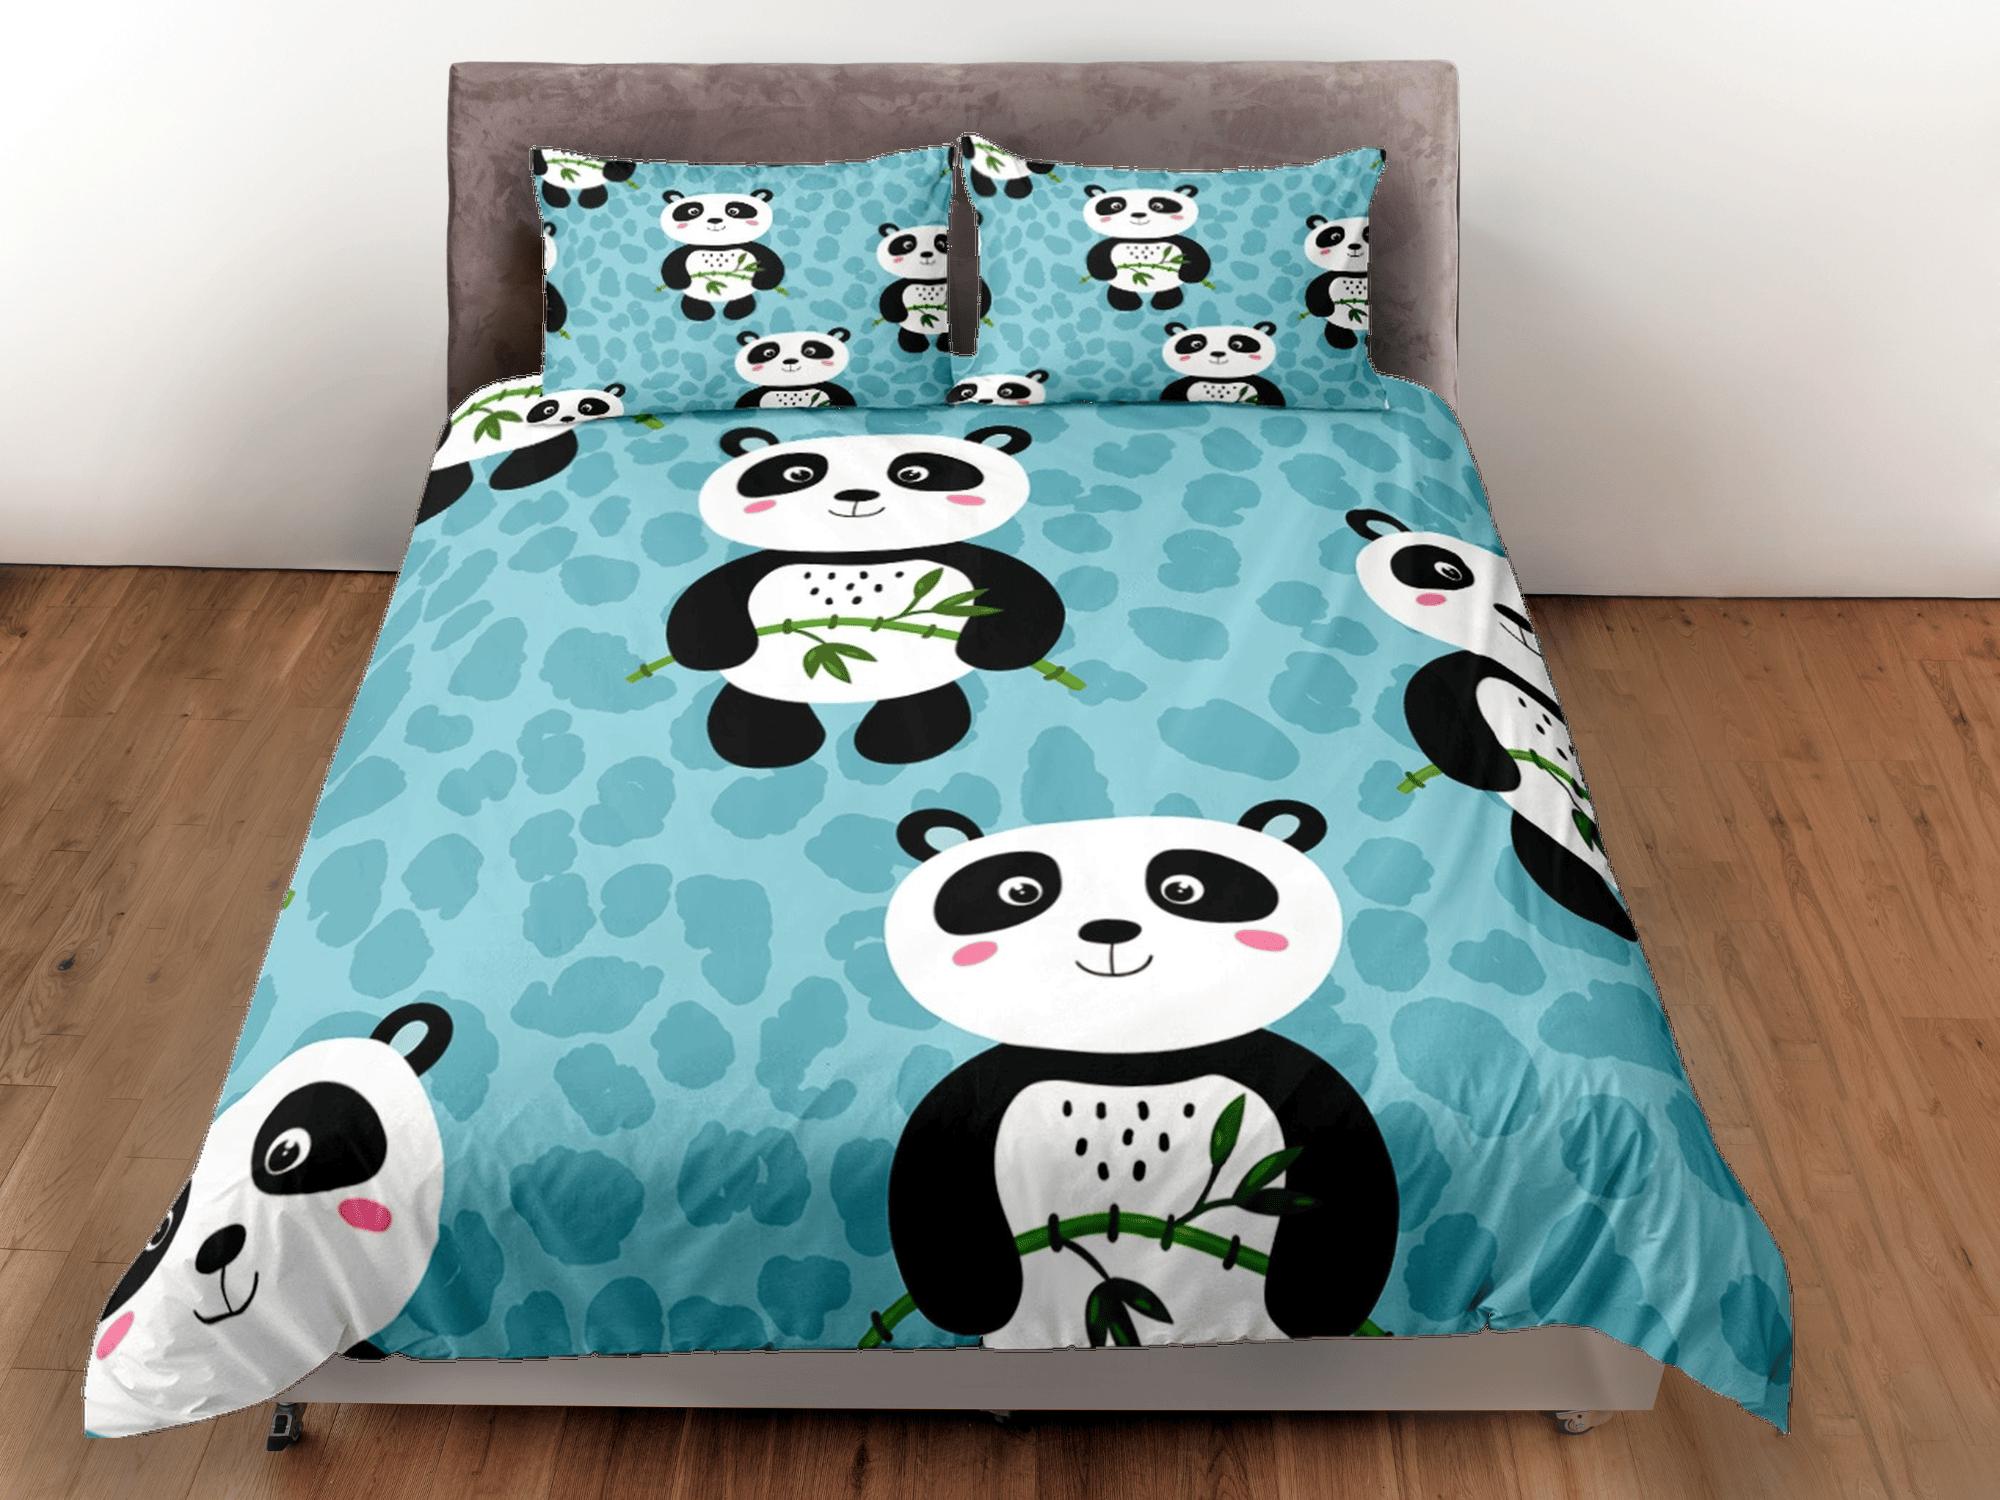 daintyduvet Panda and bamboo teal green duvet cover for kids, bedding set full, king, queen, dorm bedding, toddler bedding, aesthetic panda lovers gift